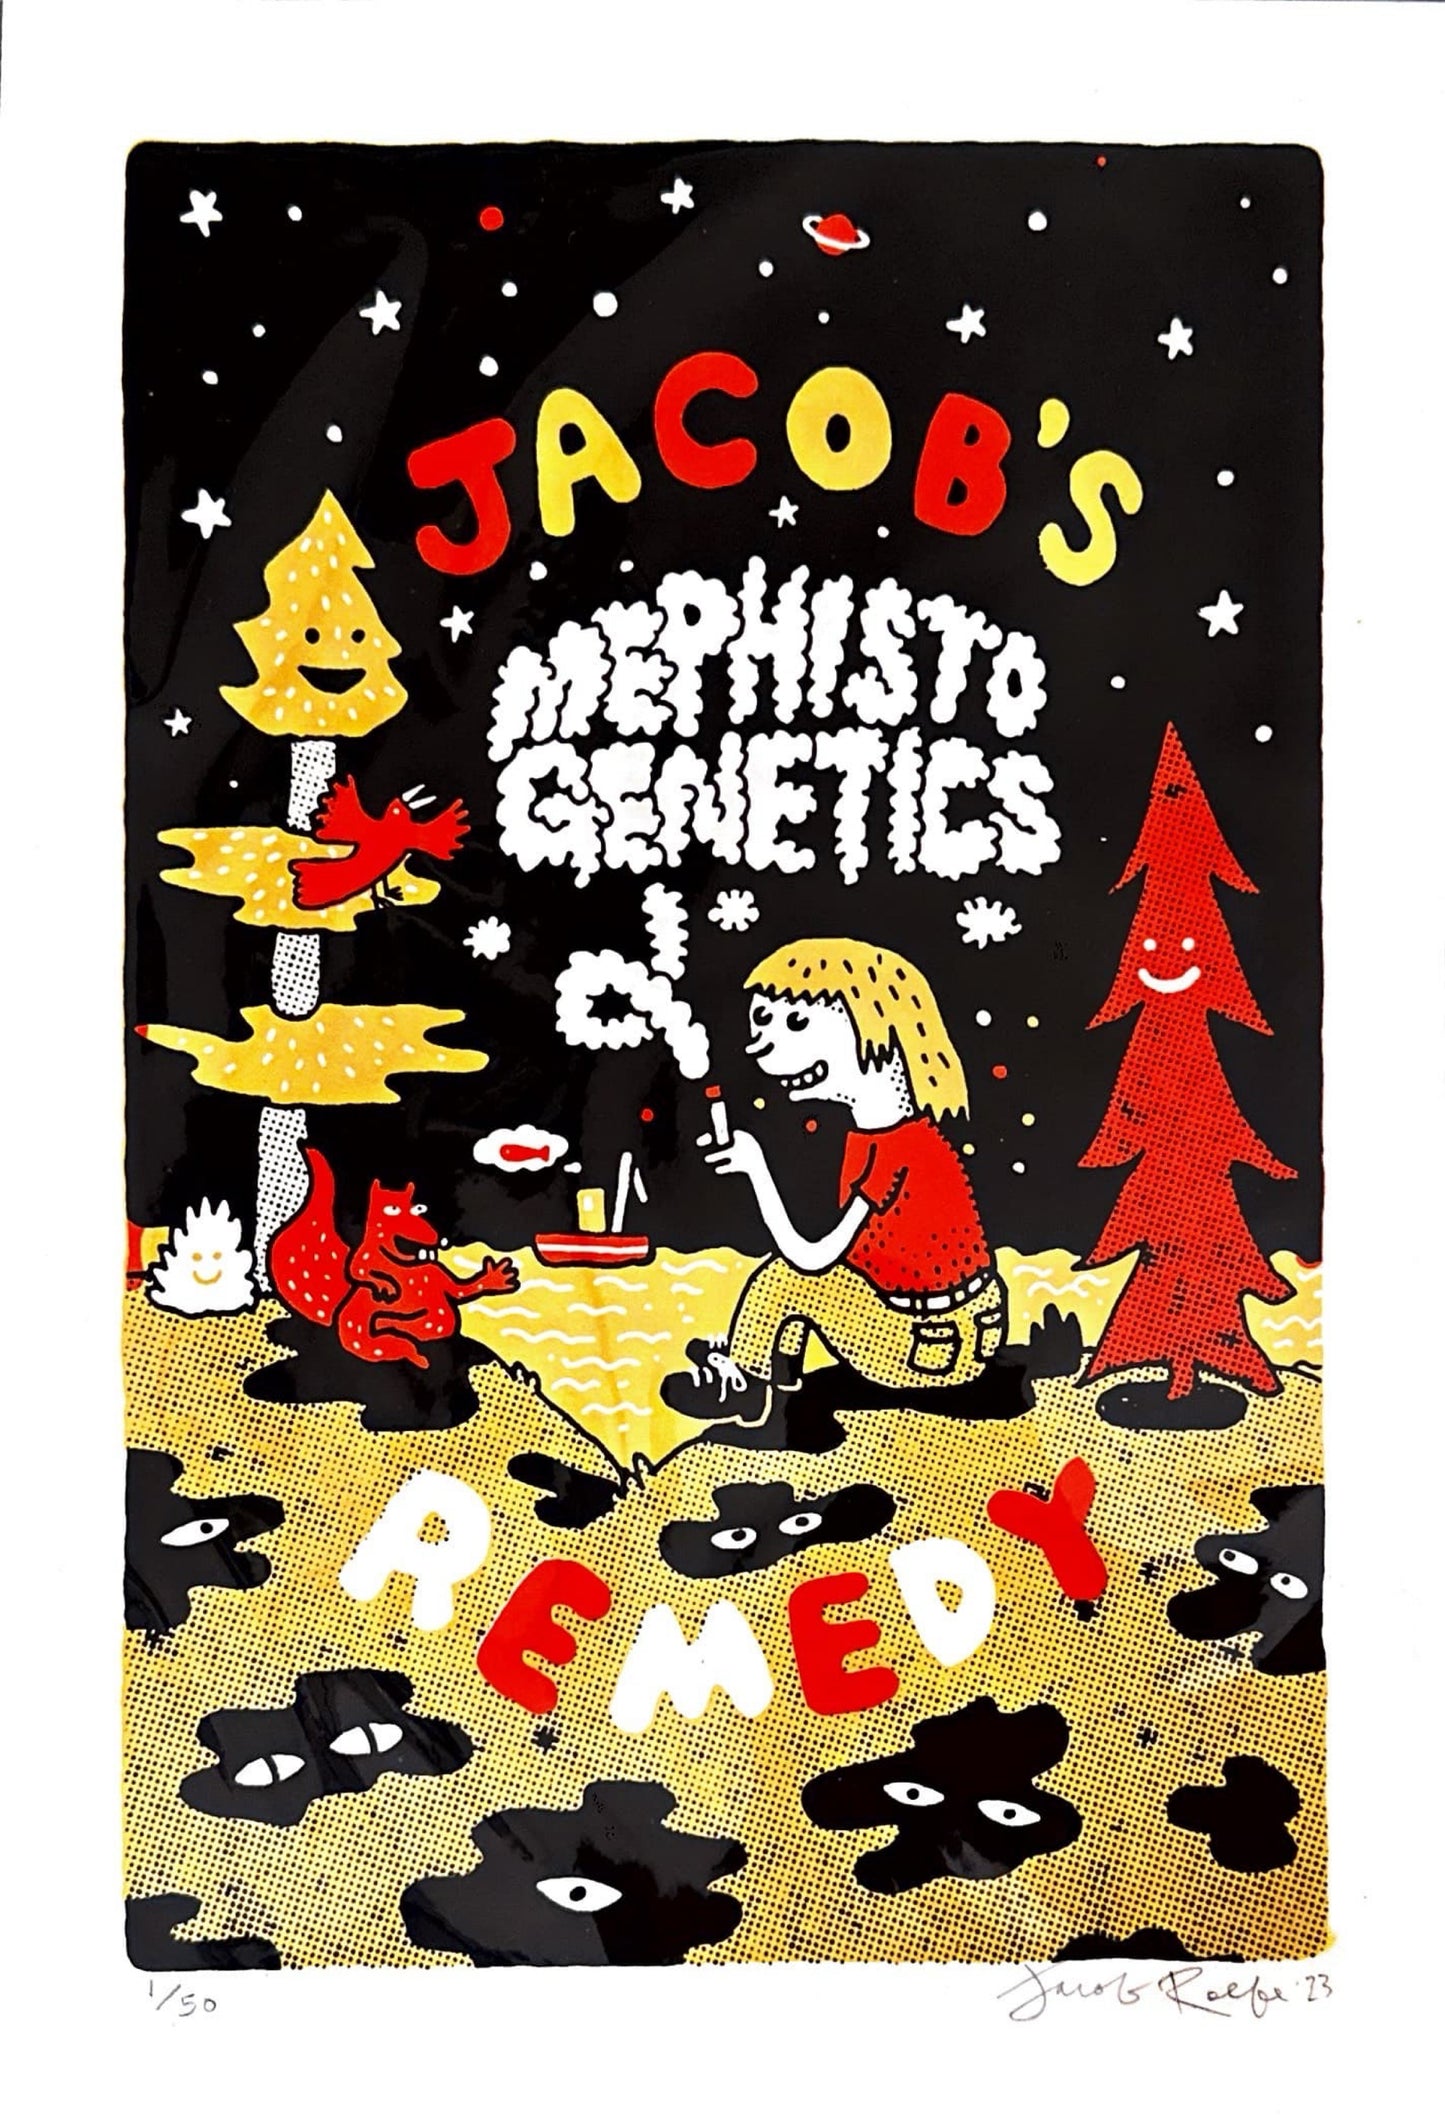 Jacob Collins x Mephisto Genetics Artwork